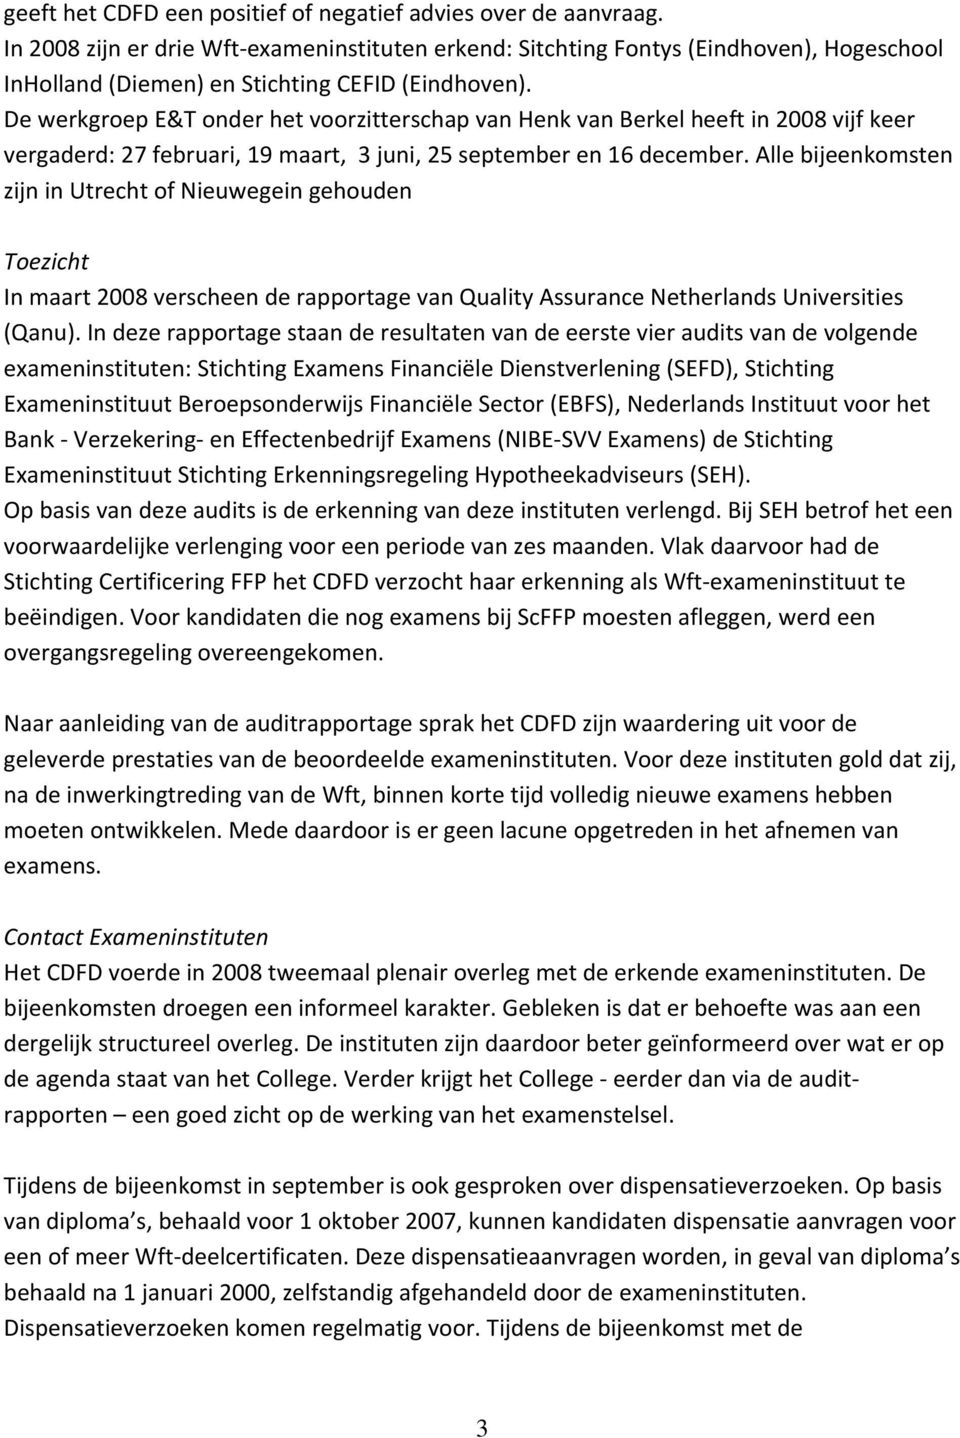 De werkgroep E&T onder het voorzitterschap van Henk van Berkel heeft in 2008 vijf keer vergaderd: 27 februari, 19 maart, 3 juni, 25 september en 16 december.